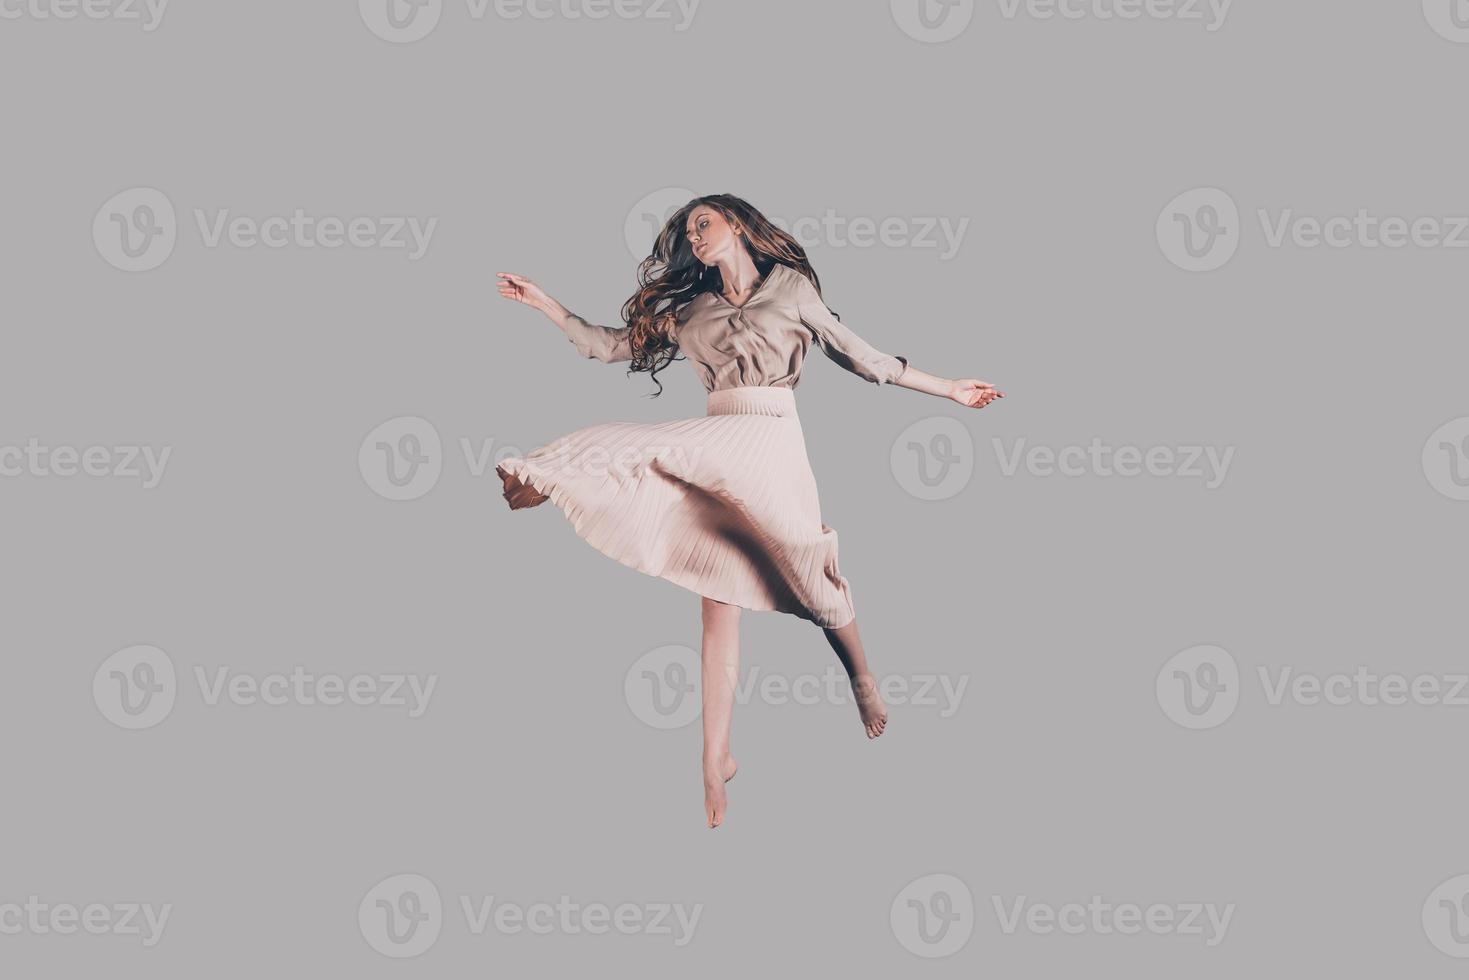 belleza flotante. foto de estudio de una atractiva joven vestida flotando en el aire